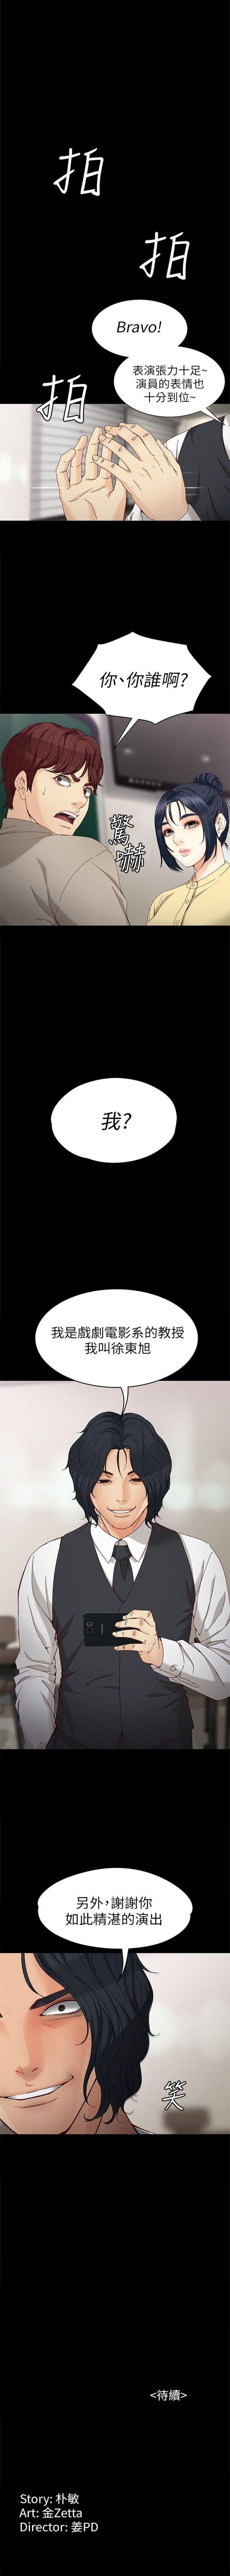 女大生世晶:无法自拔 1-30 中文翻译 （更新中） 201